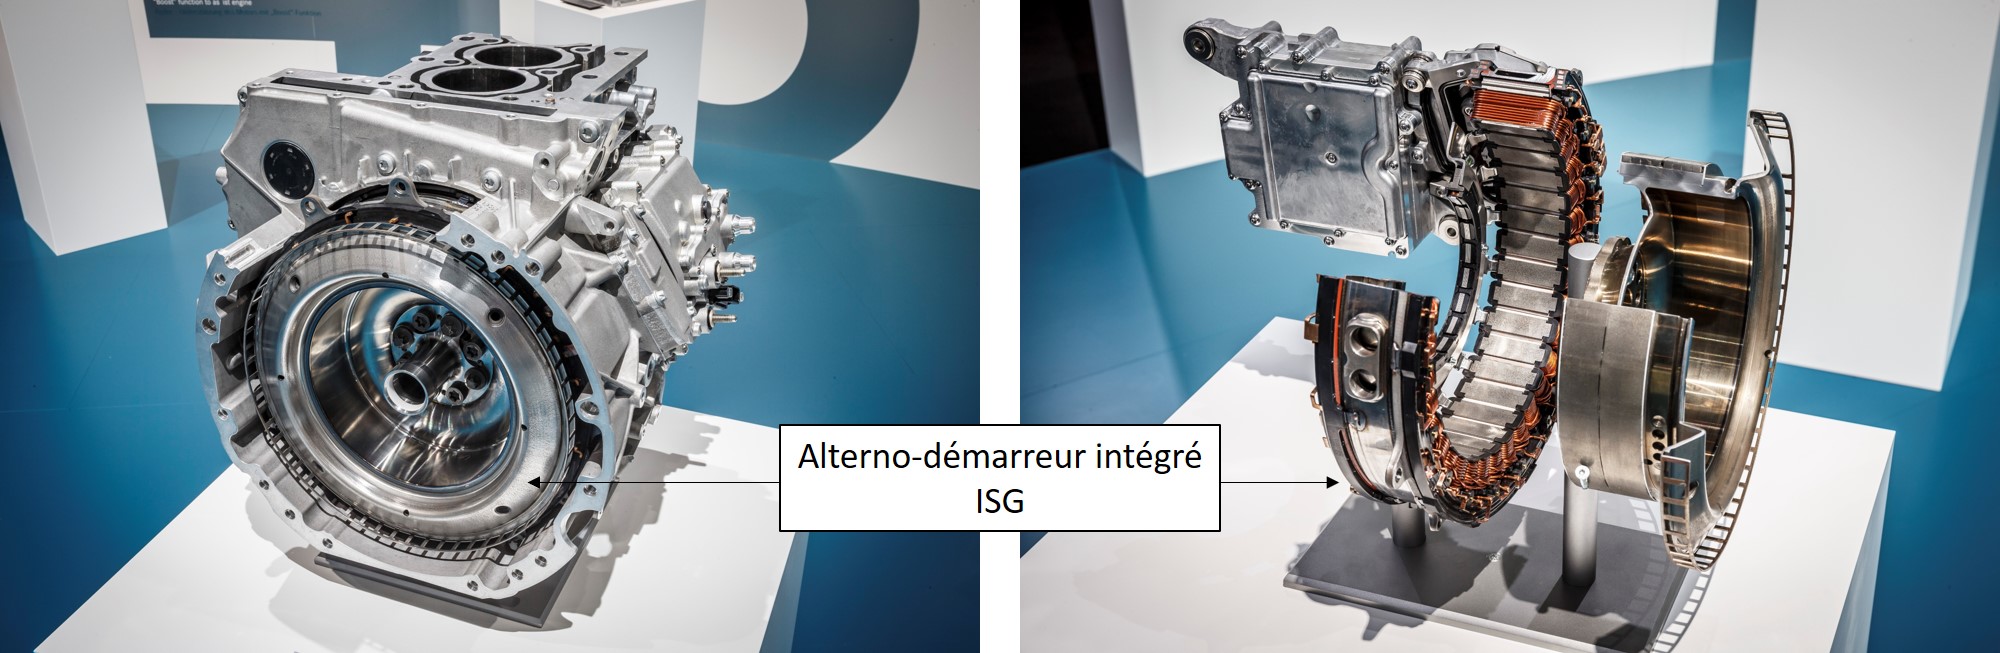 Mercedes OM654 - alterno-démarreur intégré ISG 48V